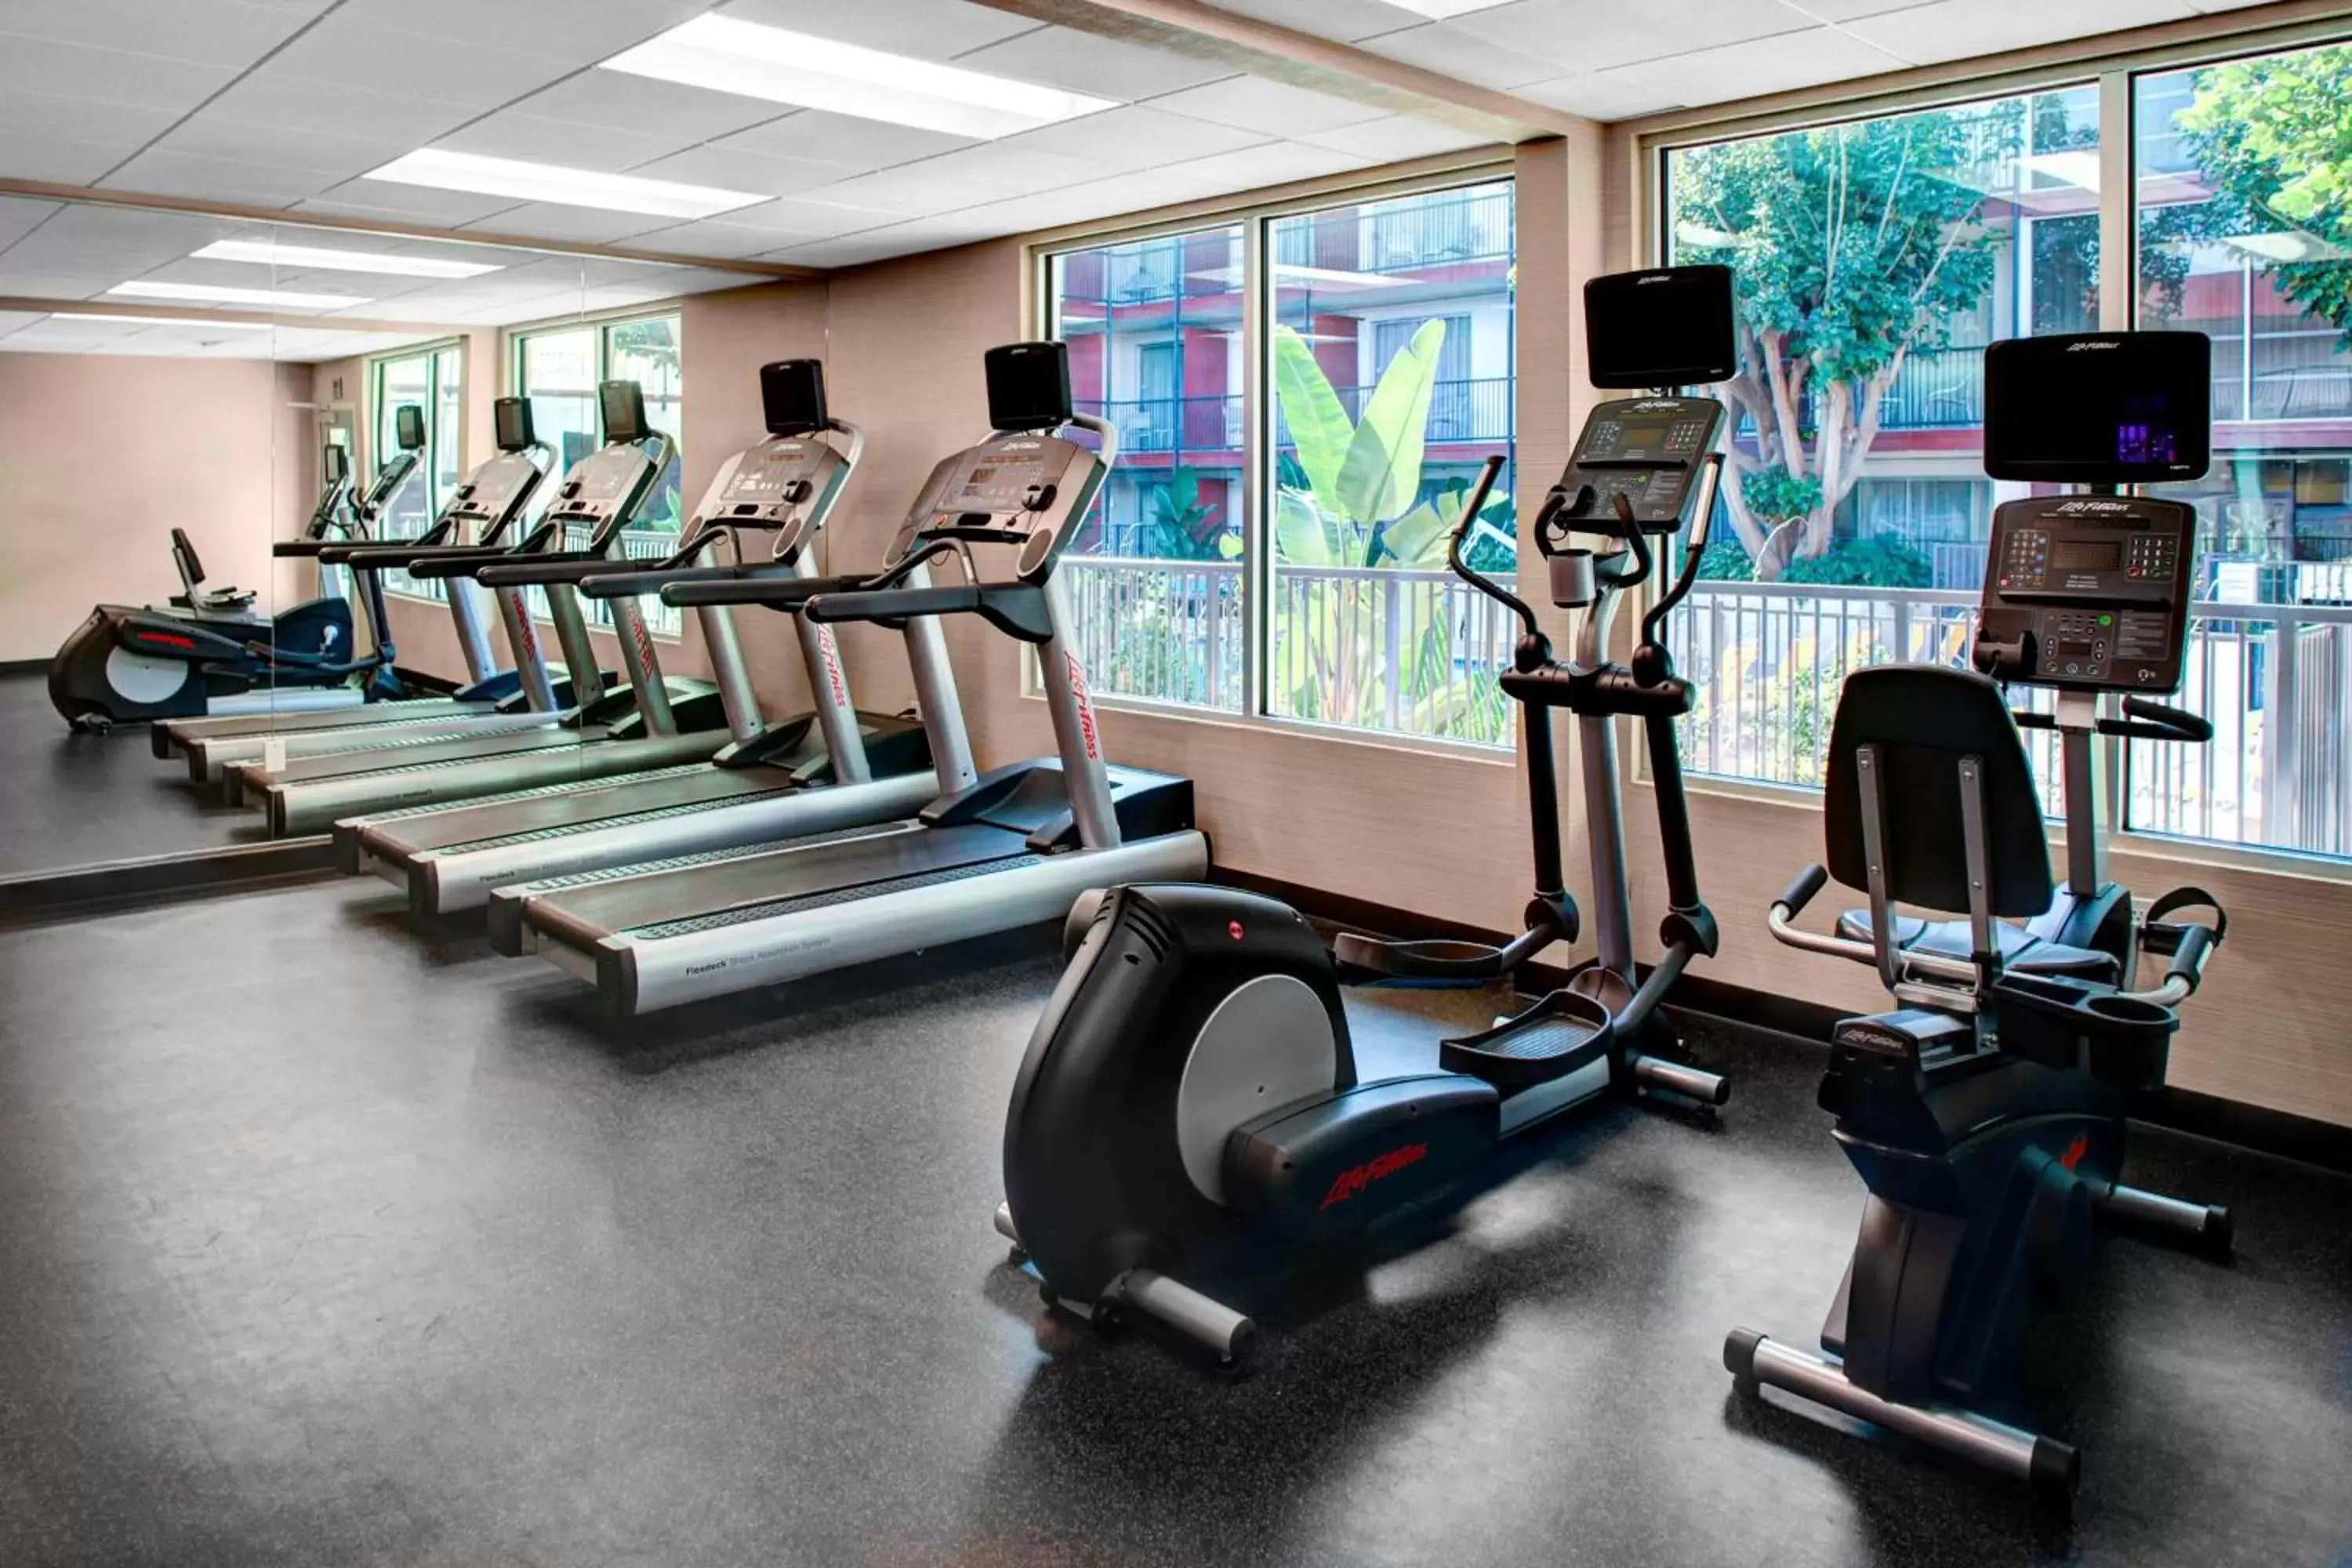 Fitness centre/facilities, Fitness Center/Facilities in Fairfield Inn & Suites by Marriott Los Angeles LAX/El Segundo